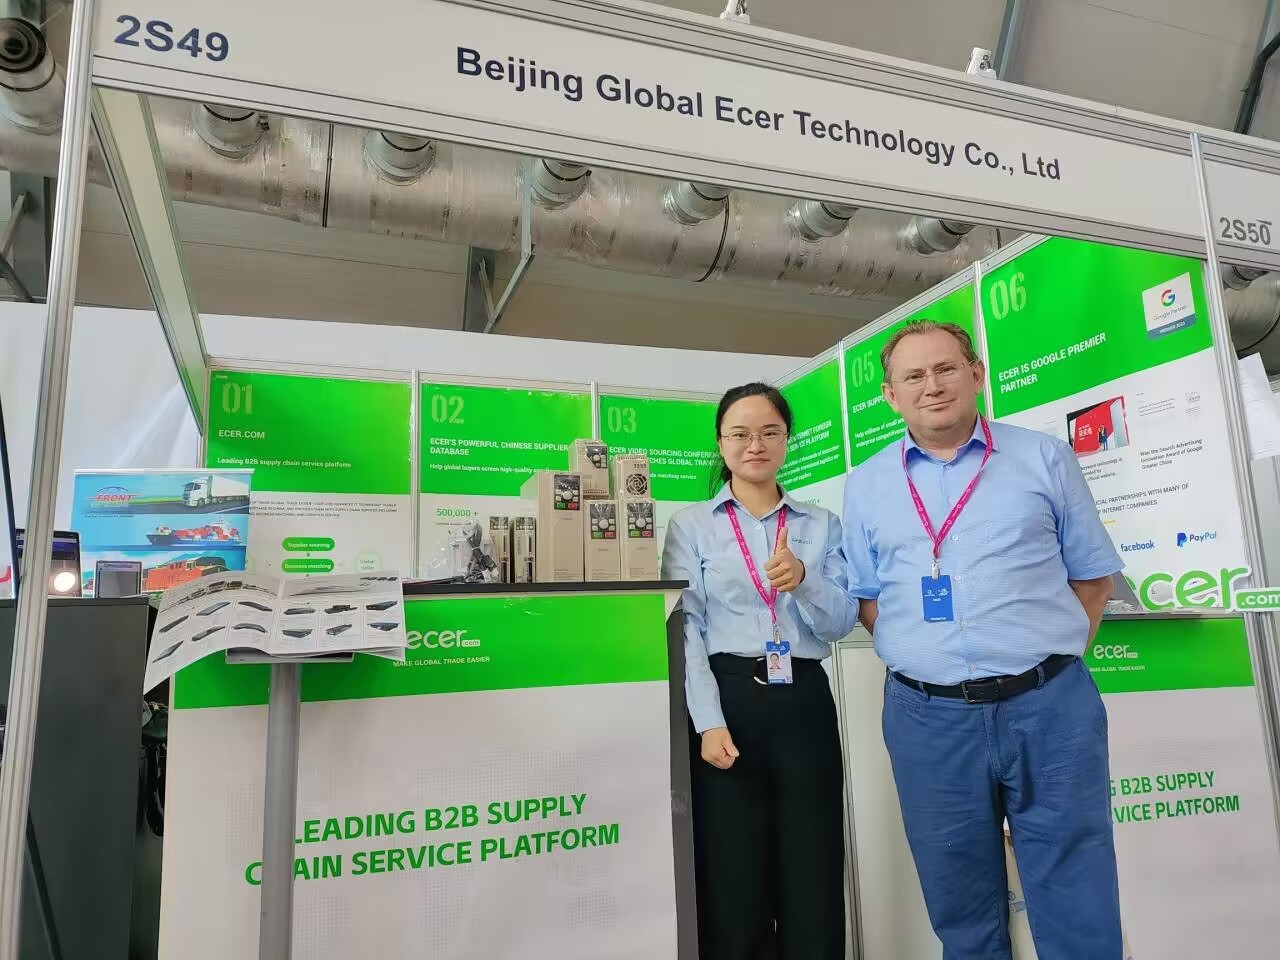 ประเทศจีน Beijing Silk Road Enterprise Management Services Co.,LTD รายละเอียด บริษัท